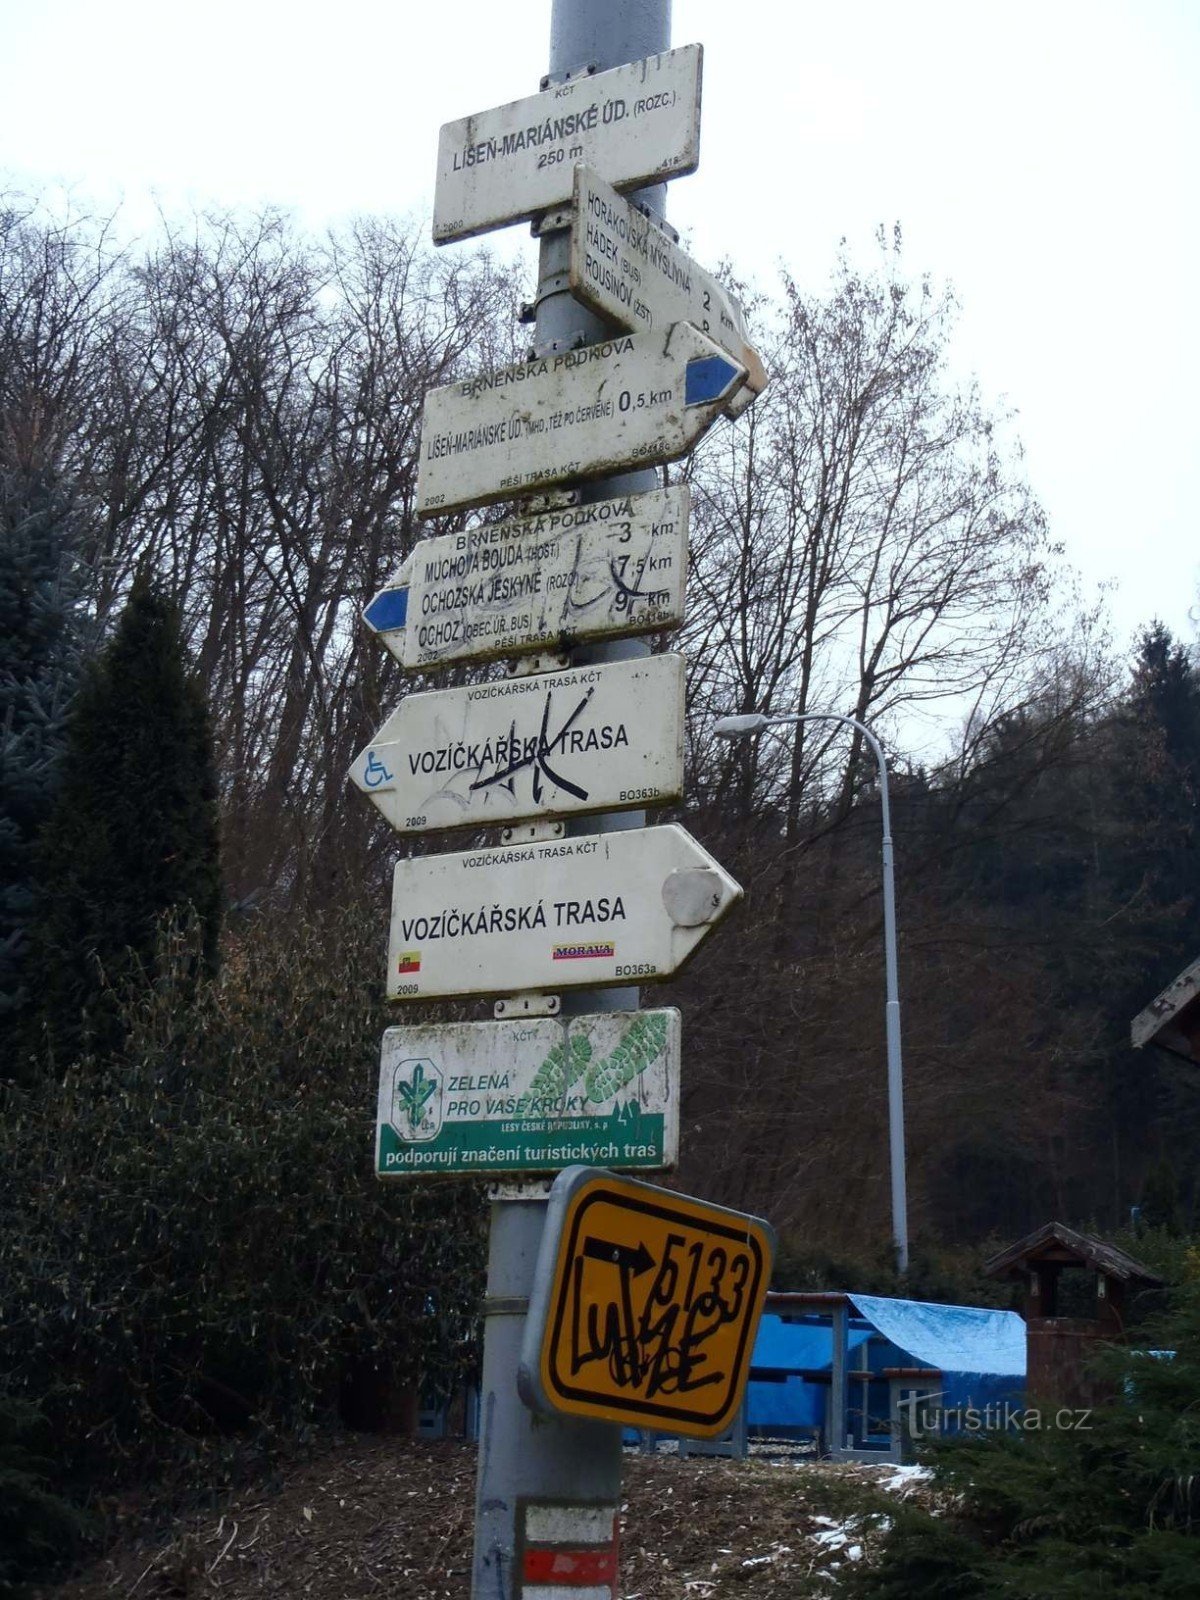 Signpost Mariánské údolí U Raka - February 6.2.2012, XNUMX